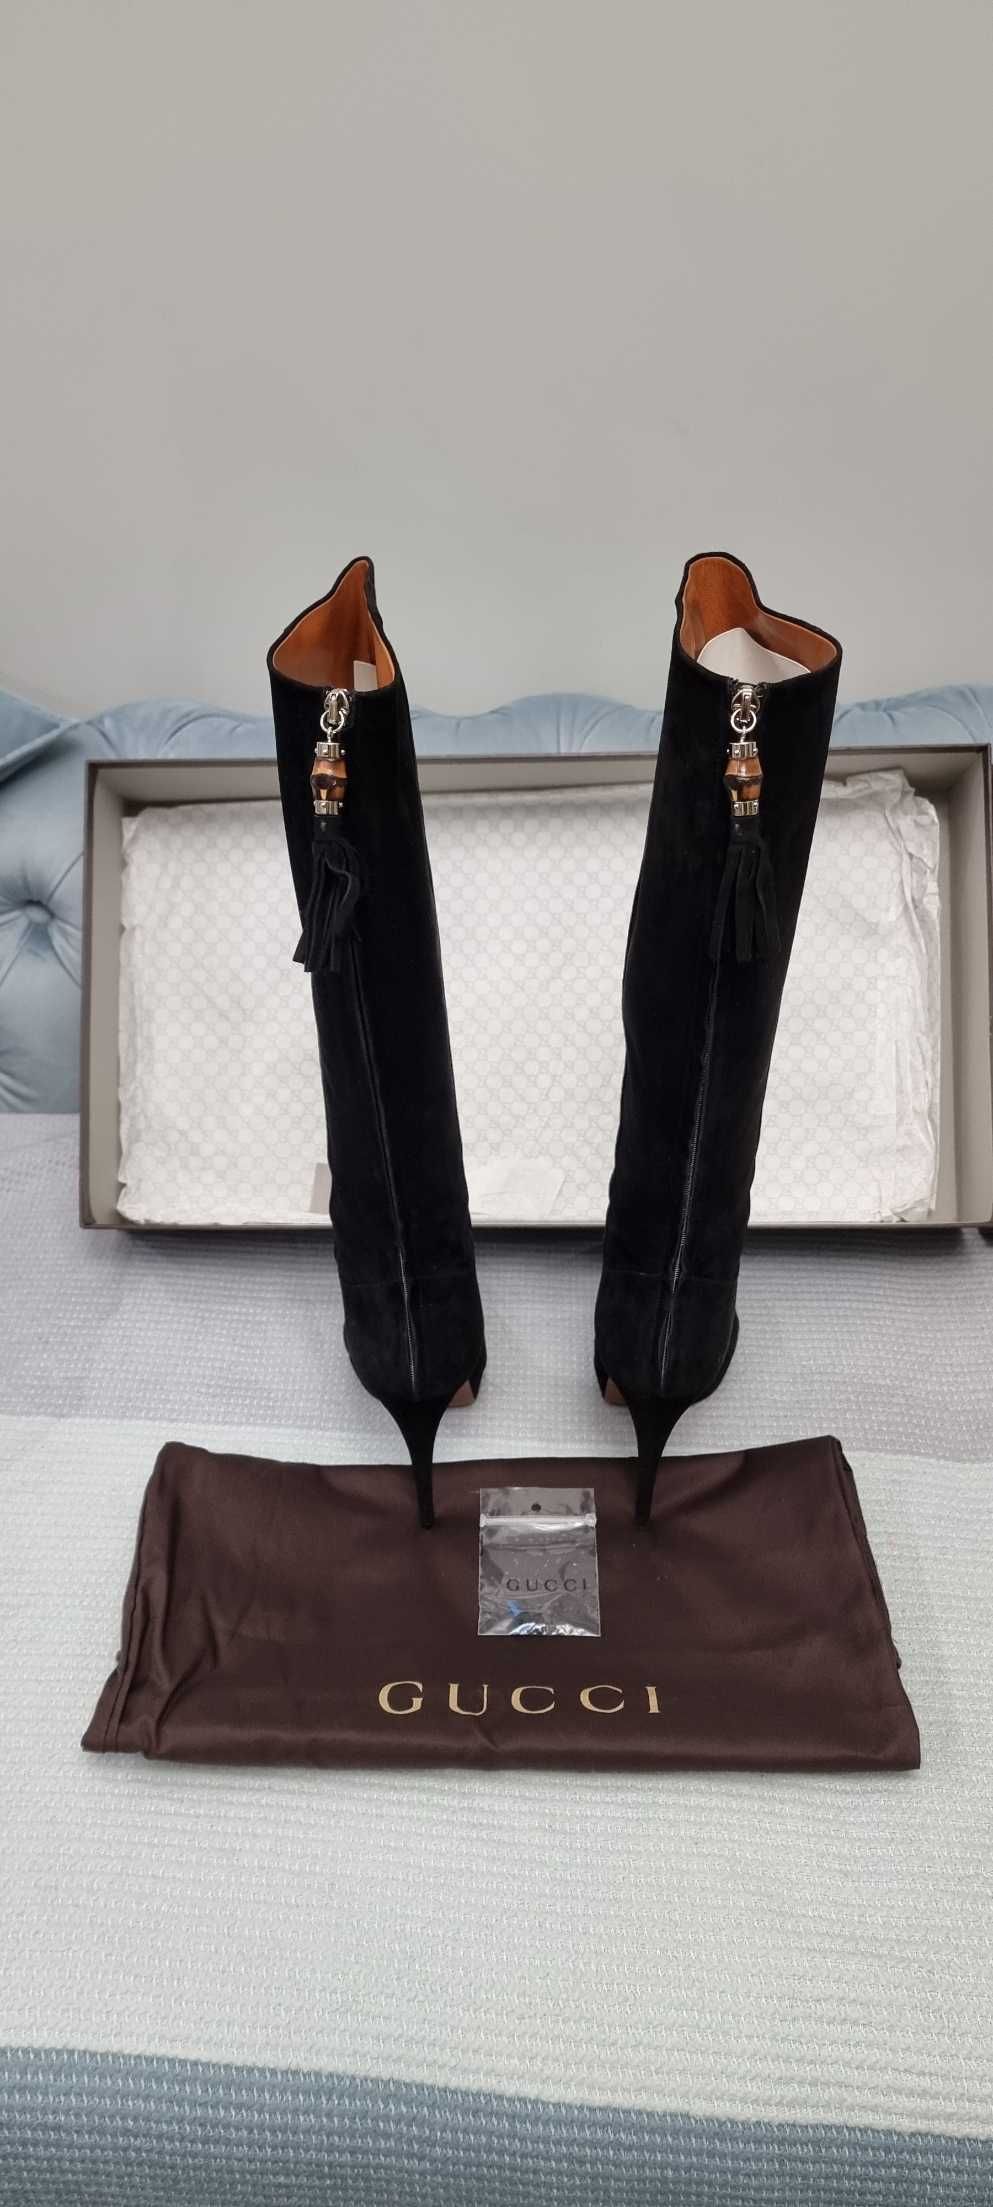 Продам женские сапоги GUCCI  черные замшевые 39 размер